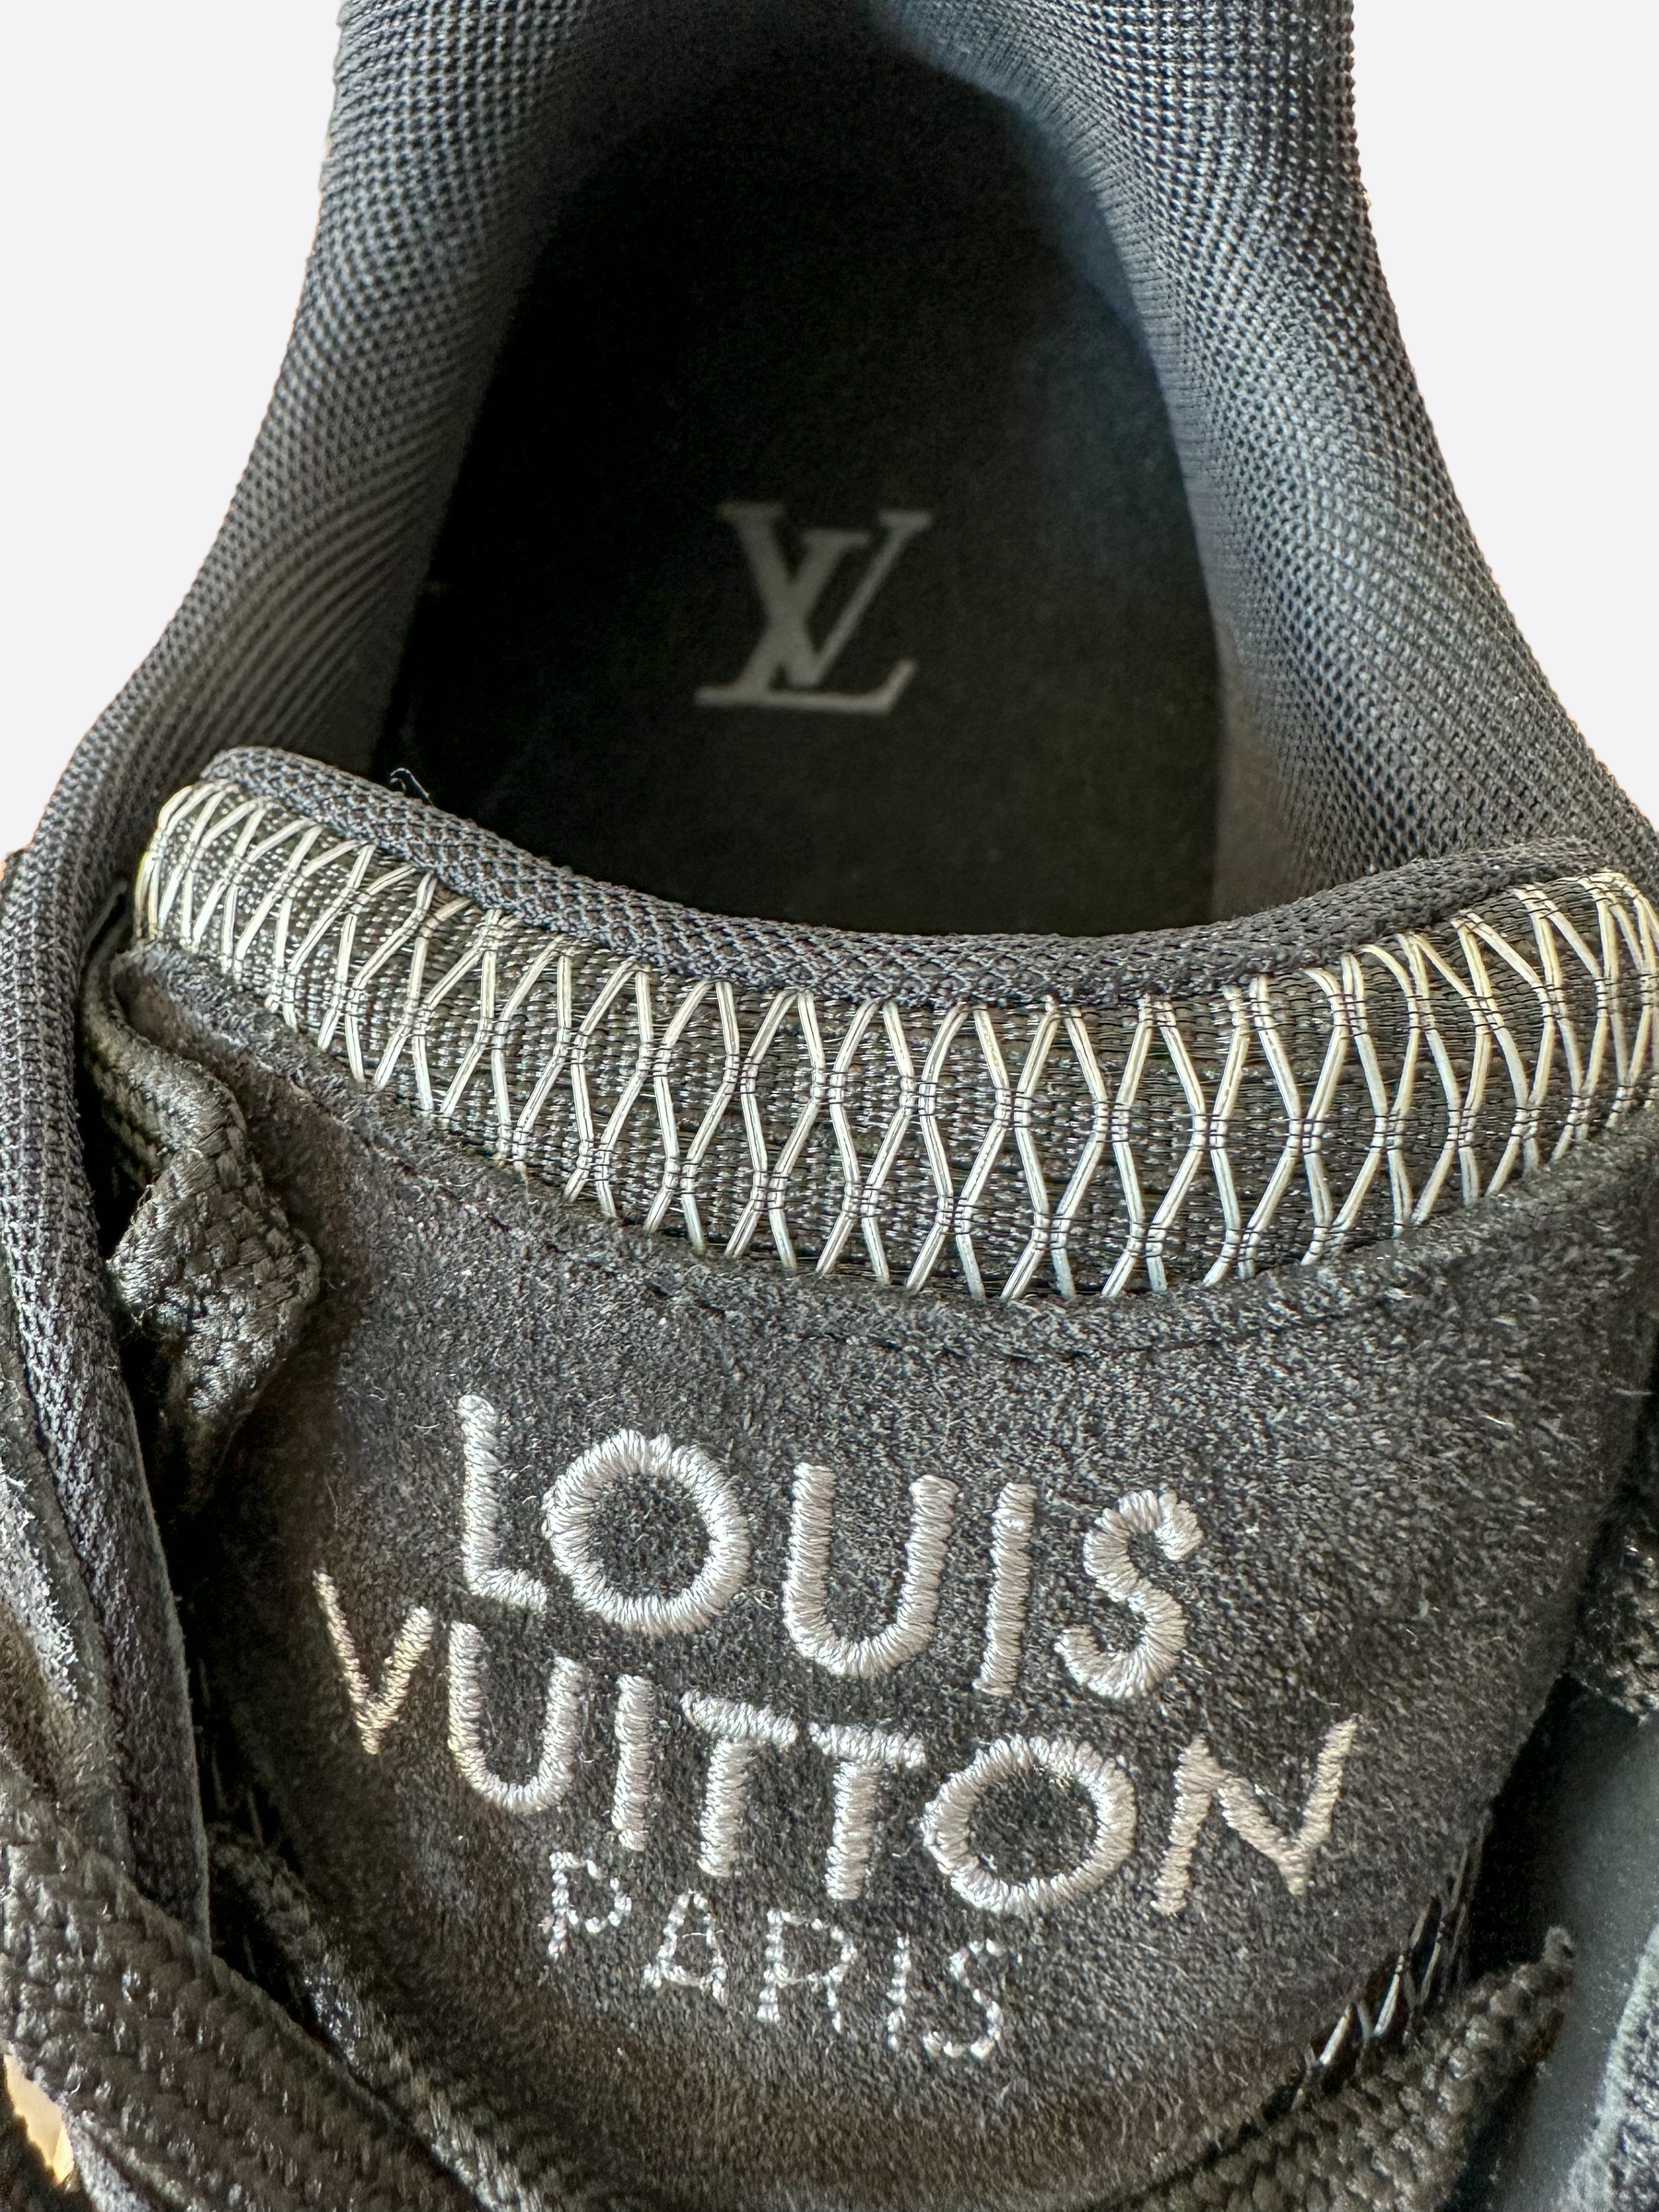 Louis Vuitton 2054 Millenium Sneakers - Blue Sneakers, Shoes